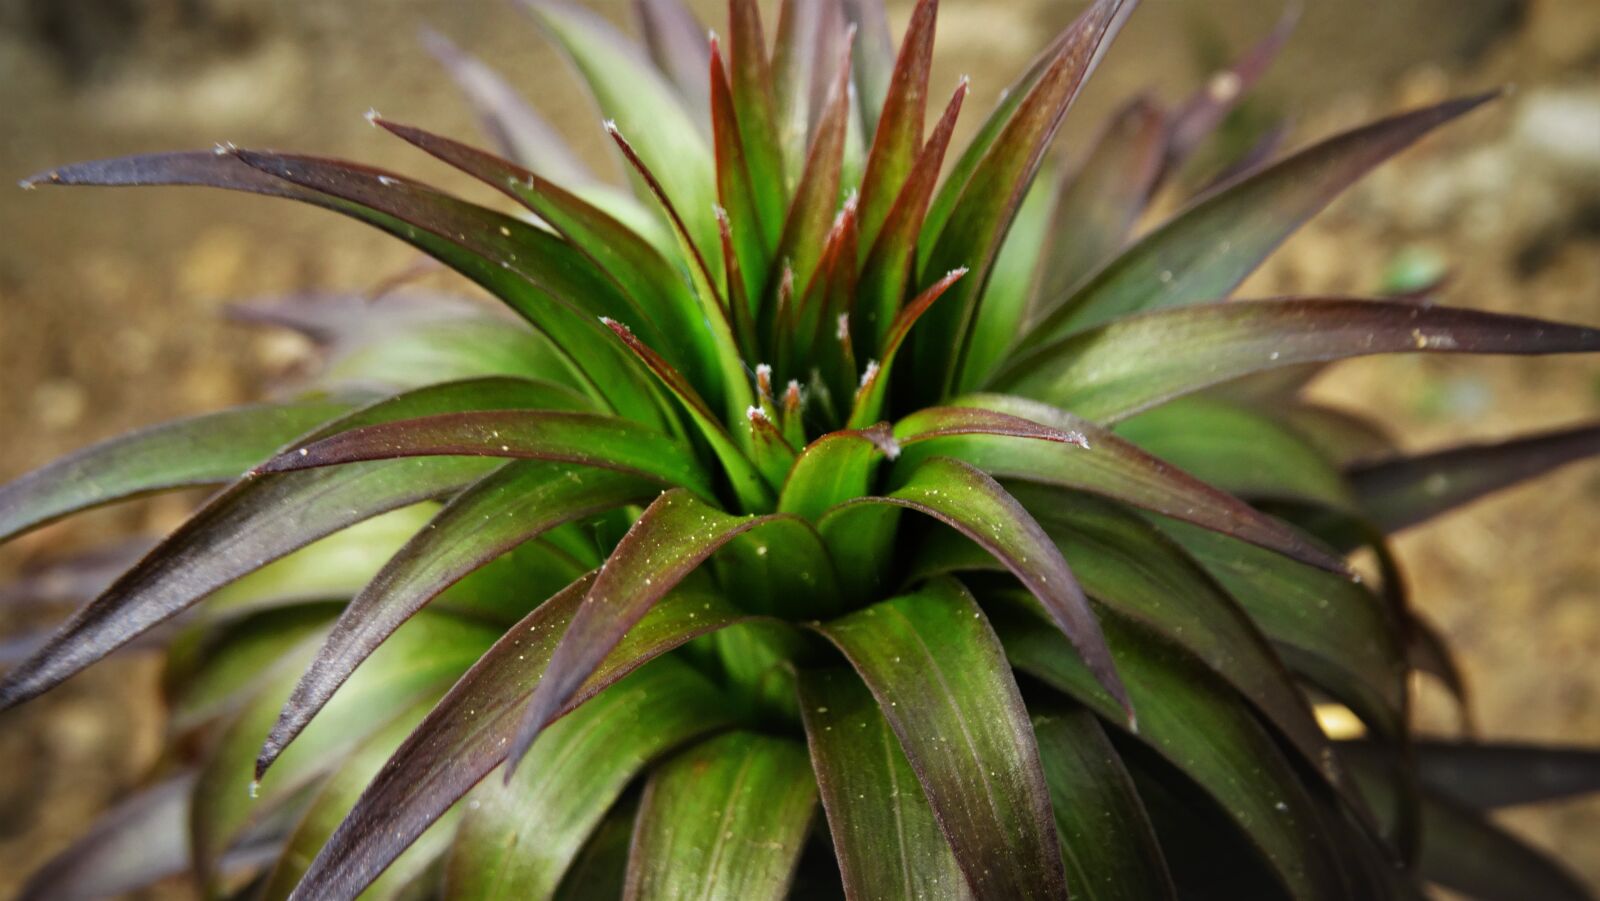 Sony Cyber-shot DSC-HX300 sample photo. Plant, lily, botany photography